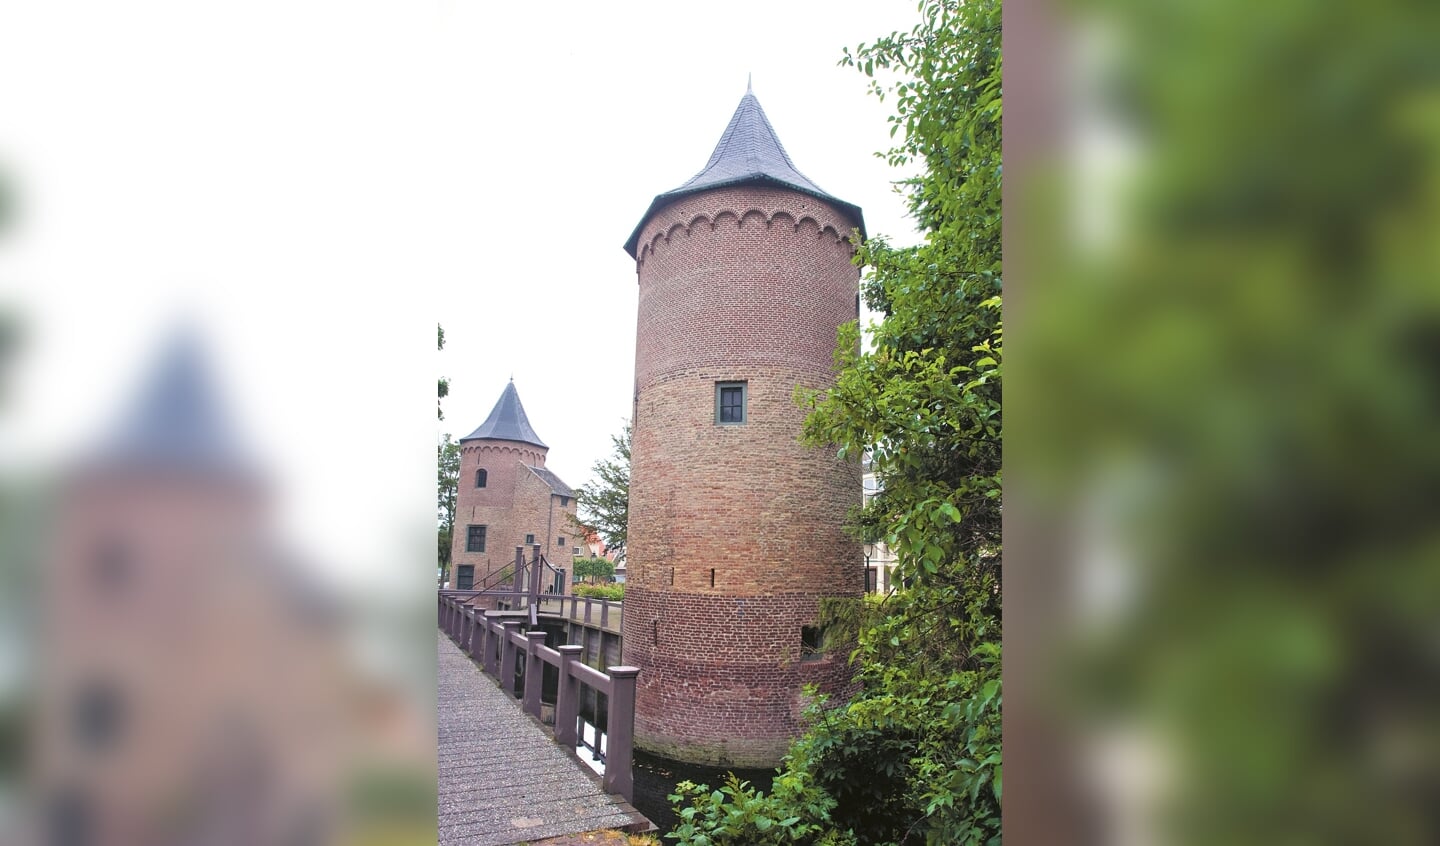 De Slottorens